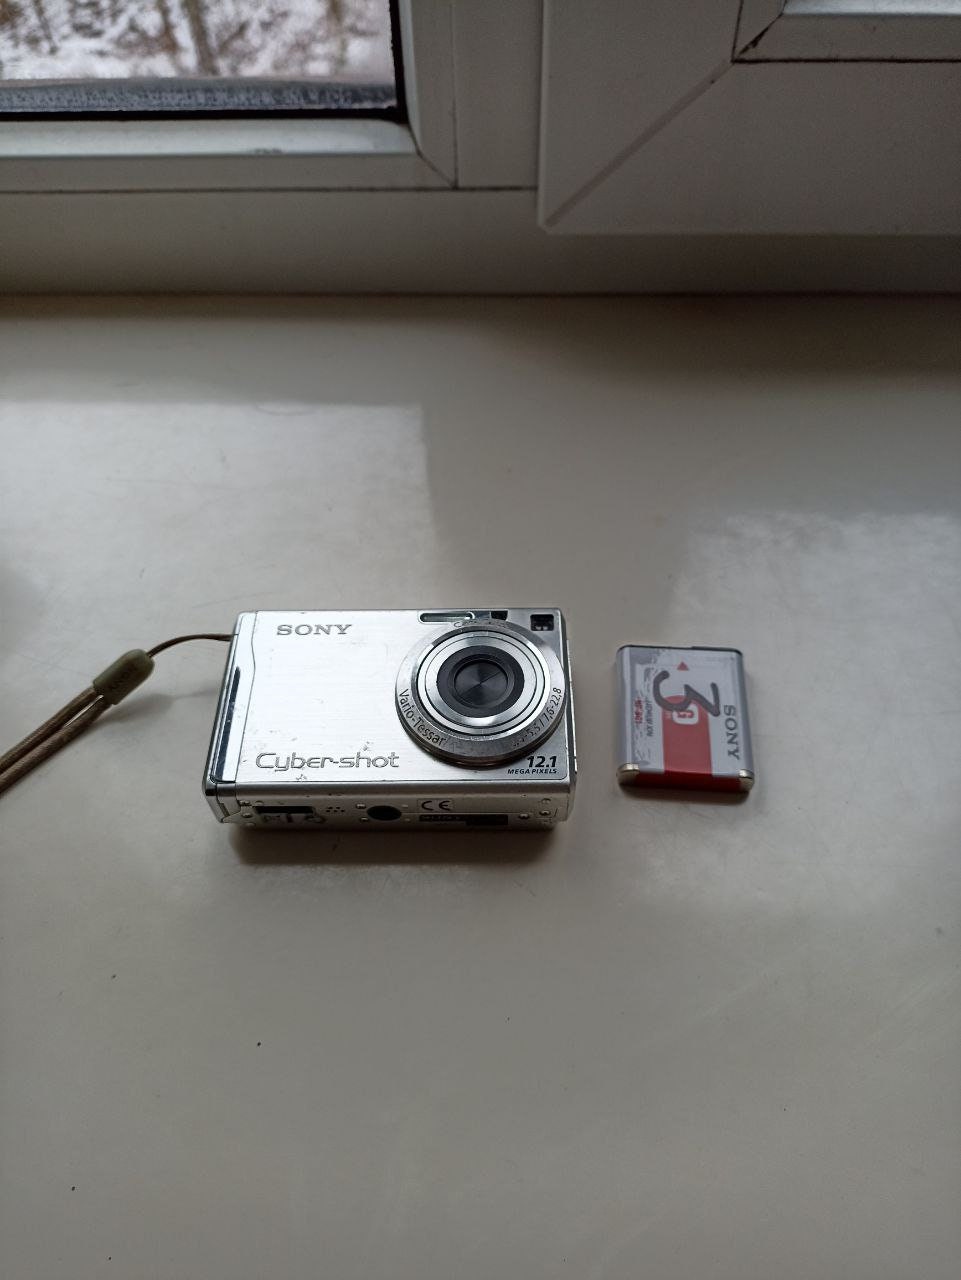  Sony Cybershot DSCW200 12.1MP Digital Camera with 3x